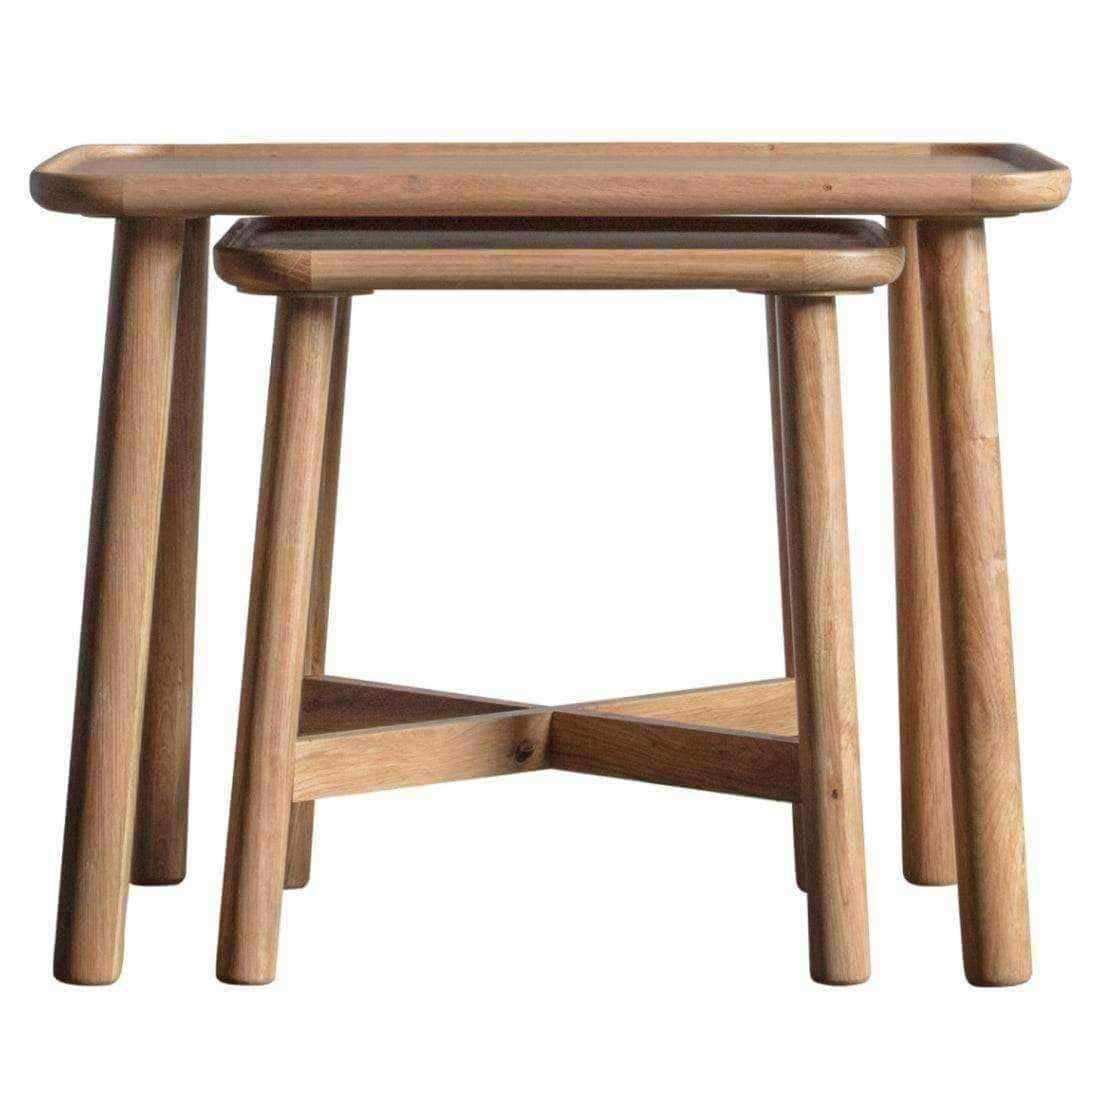 Lipped Rectangular Oak Nestling Table Set - The Farthing